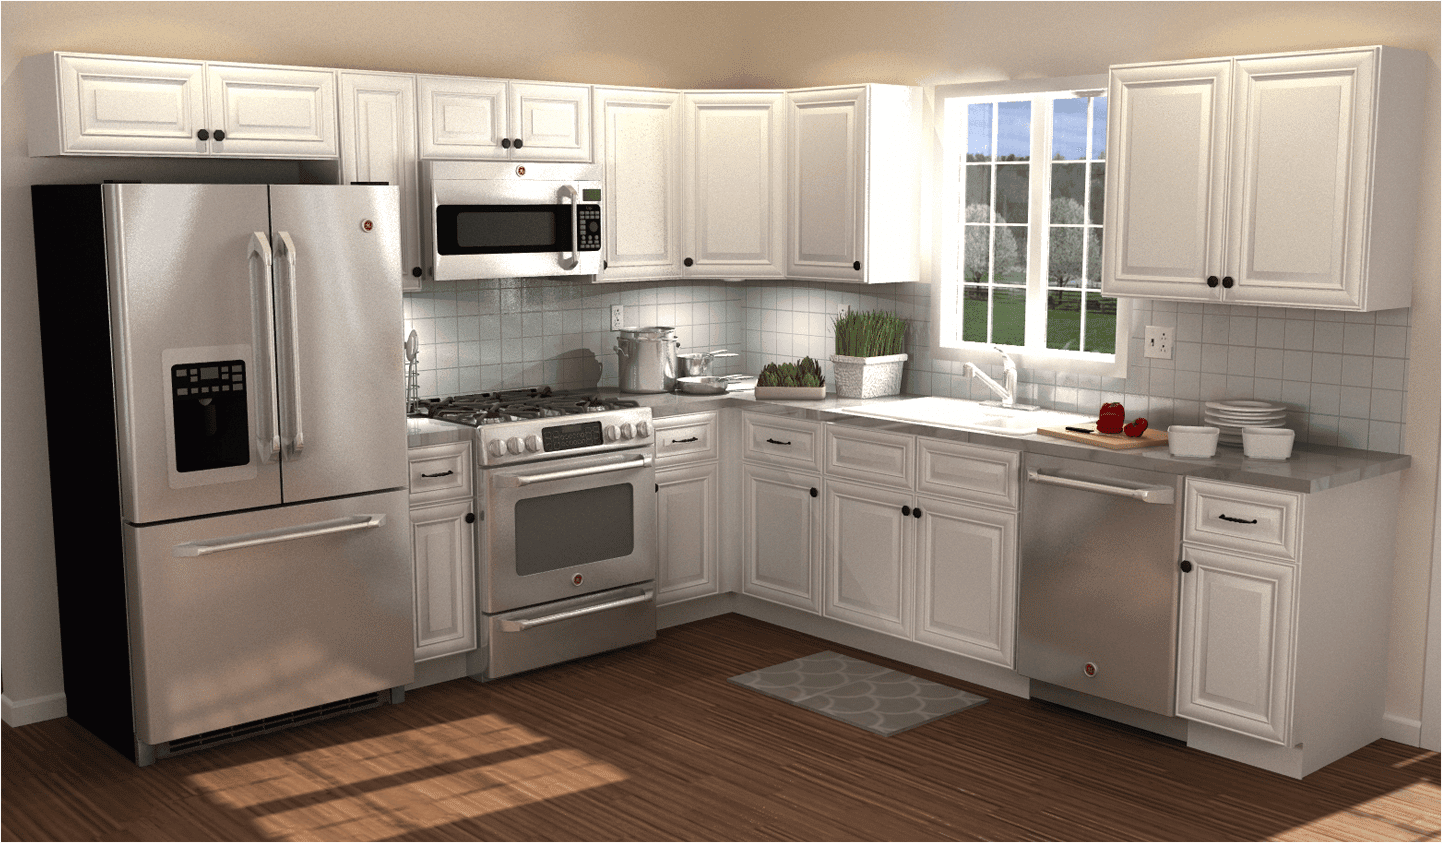 9 x 14 kitchen design